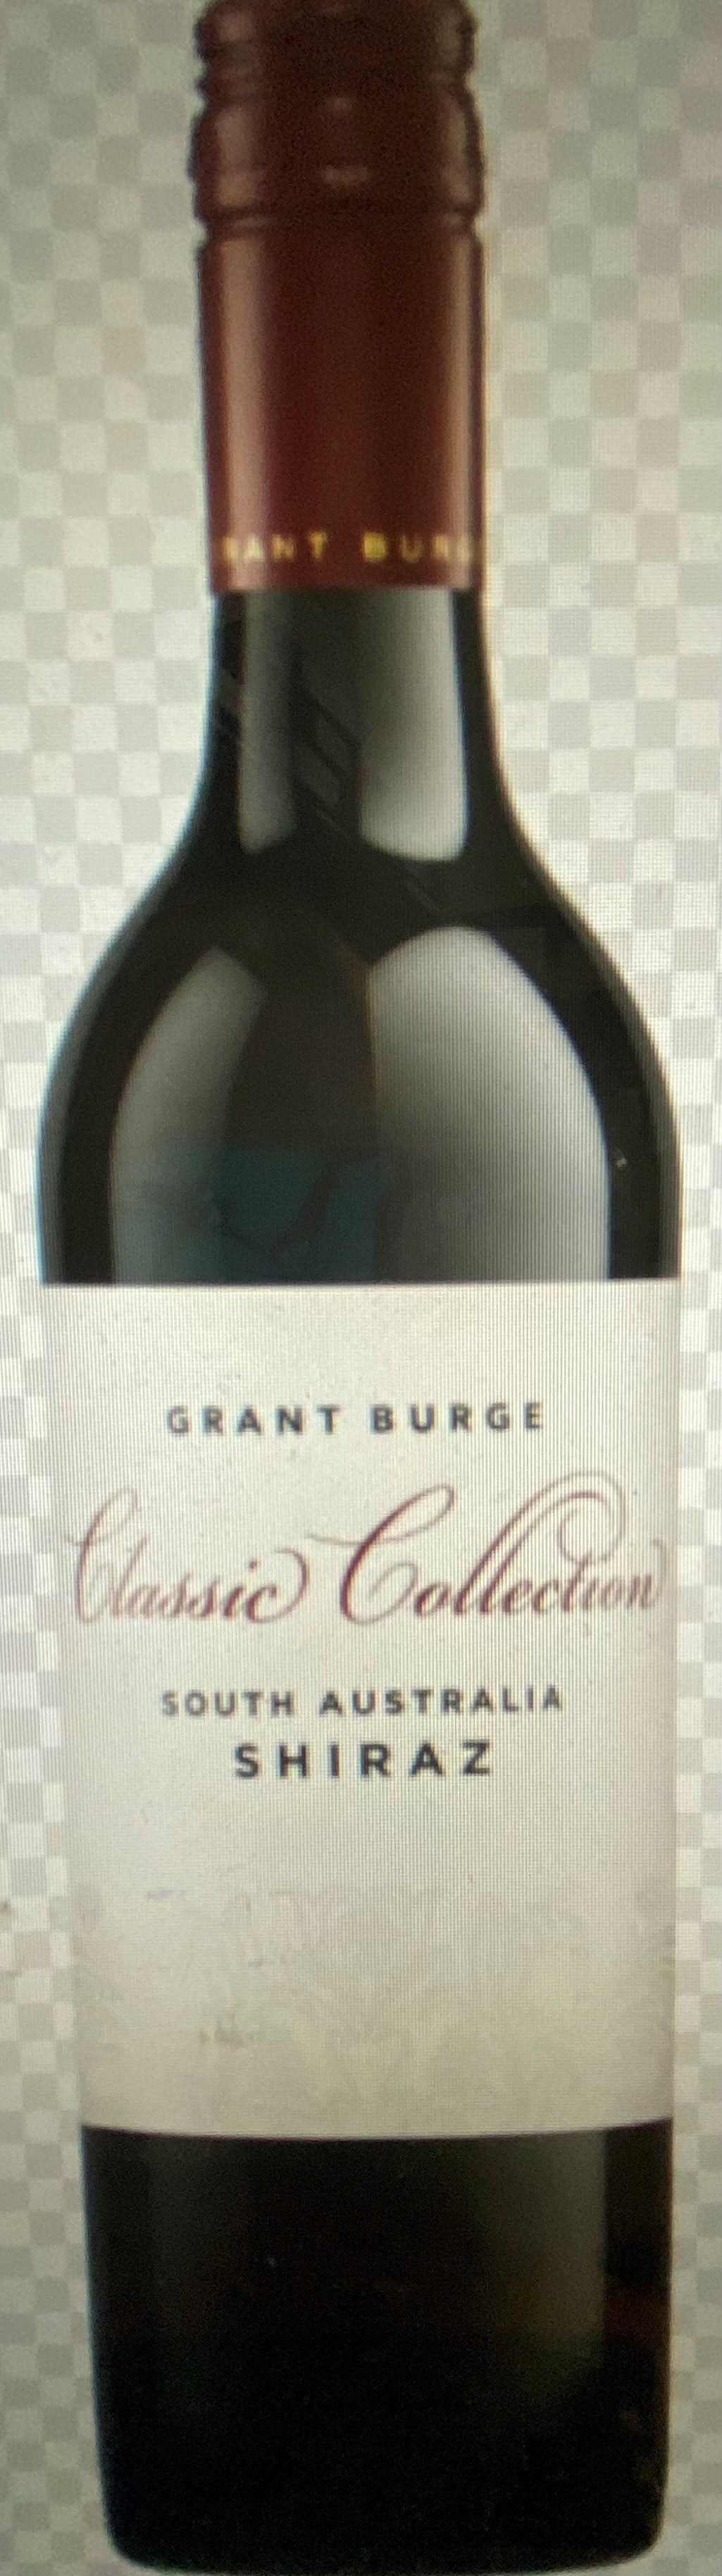 Grant Burge Shiraz - Classic Collection